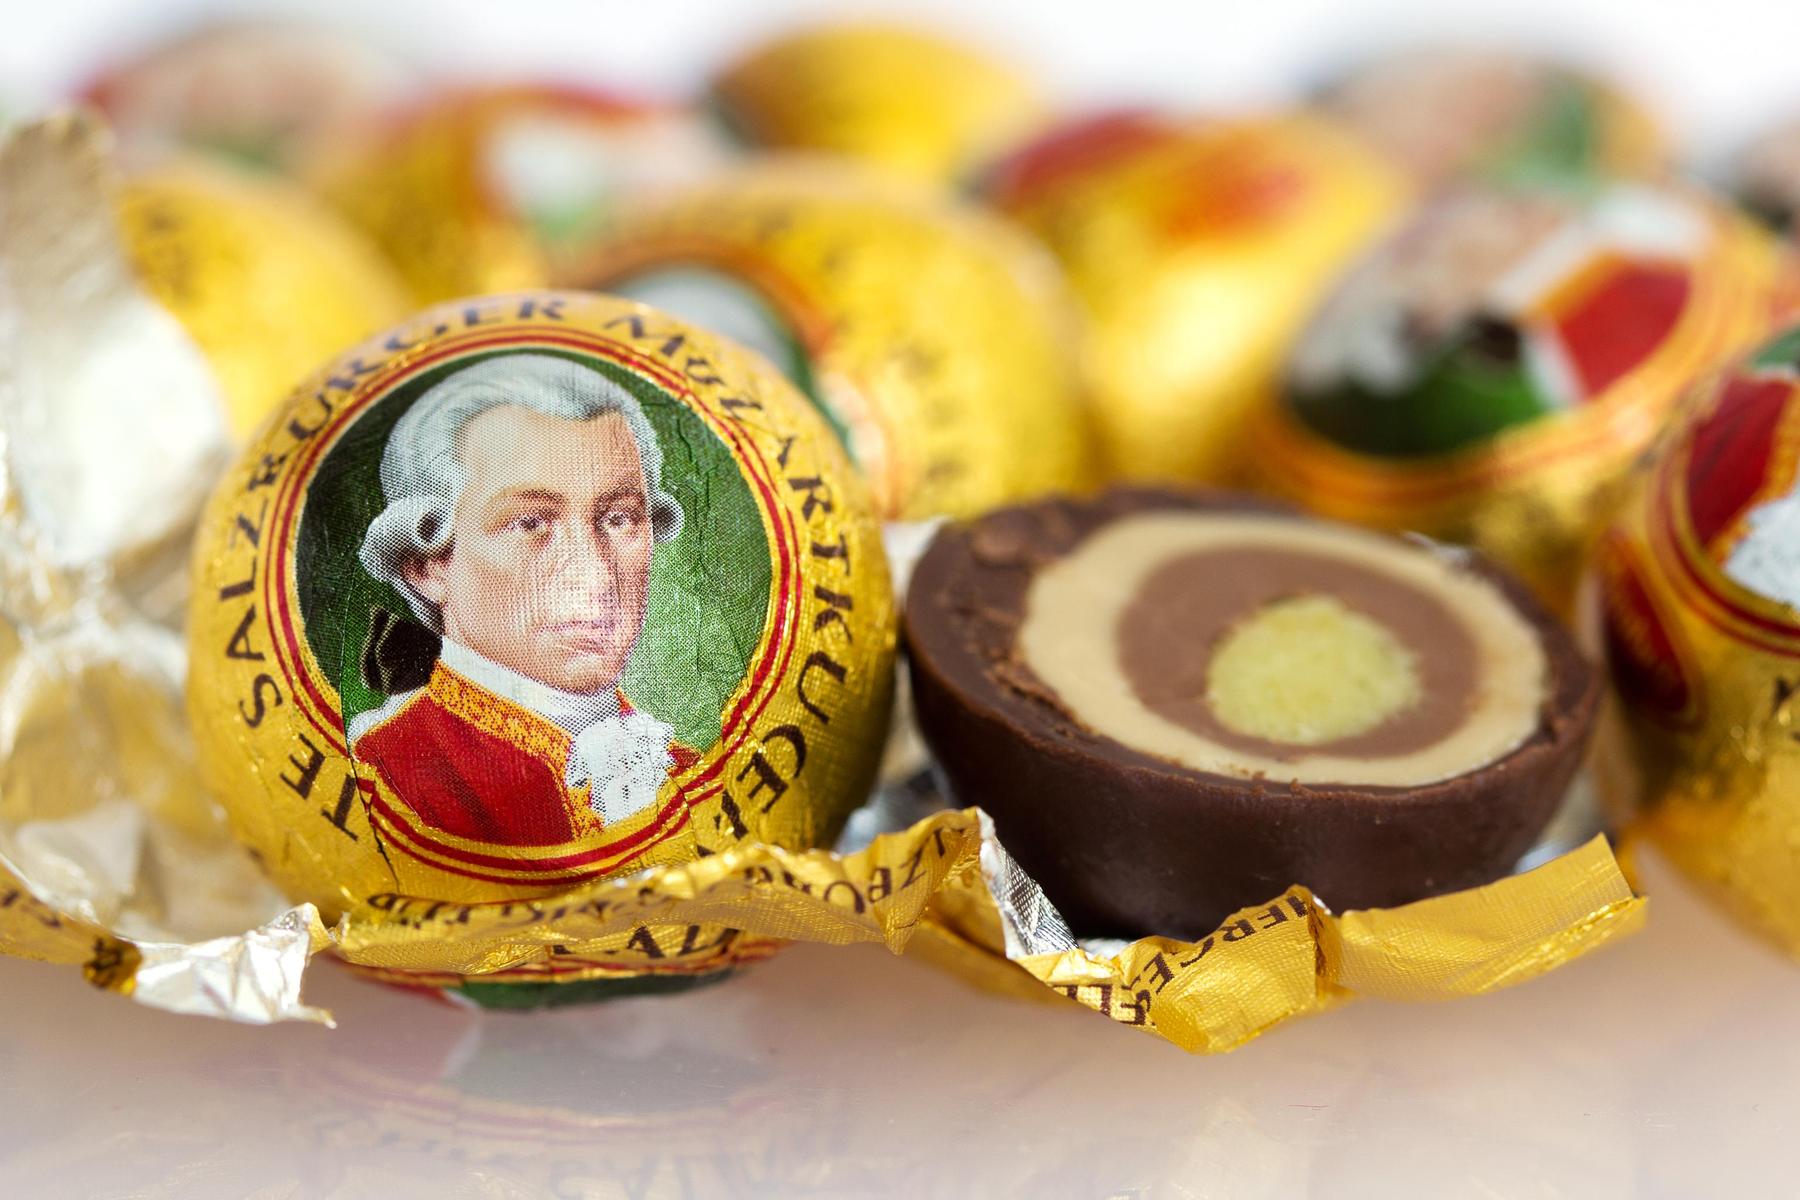 Salzburg Schokolade vor dem Aus: Der bittere Abschied der Mozartkugel aus Salzburg